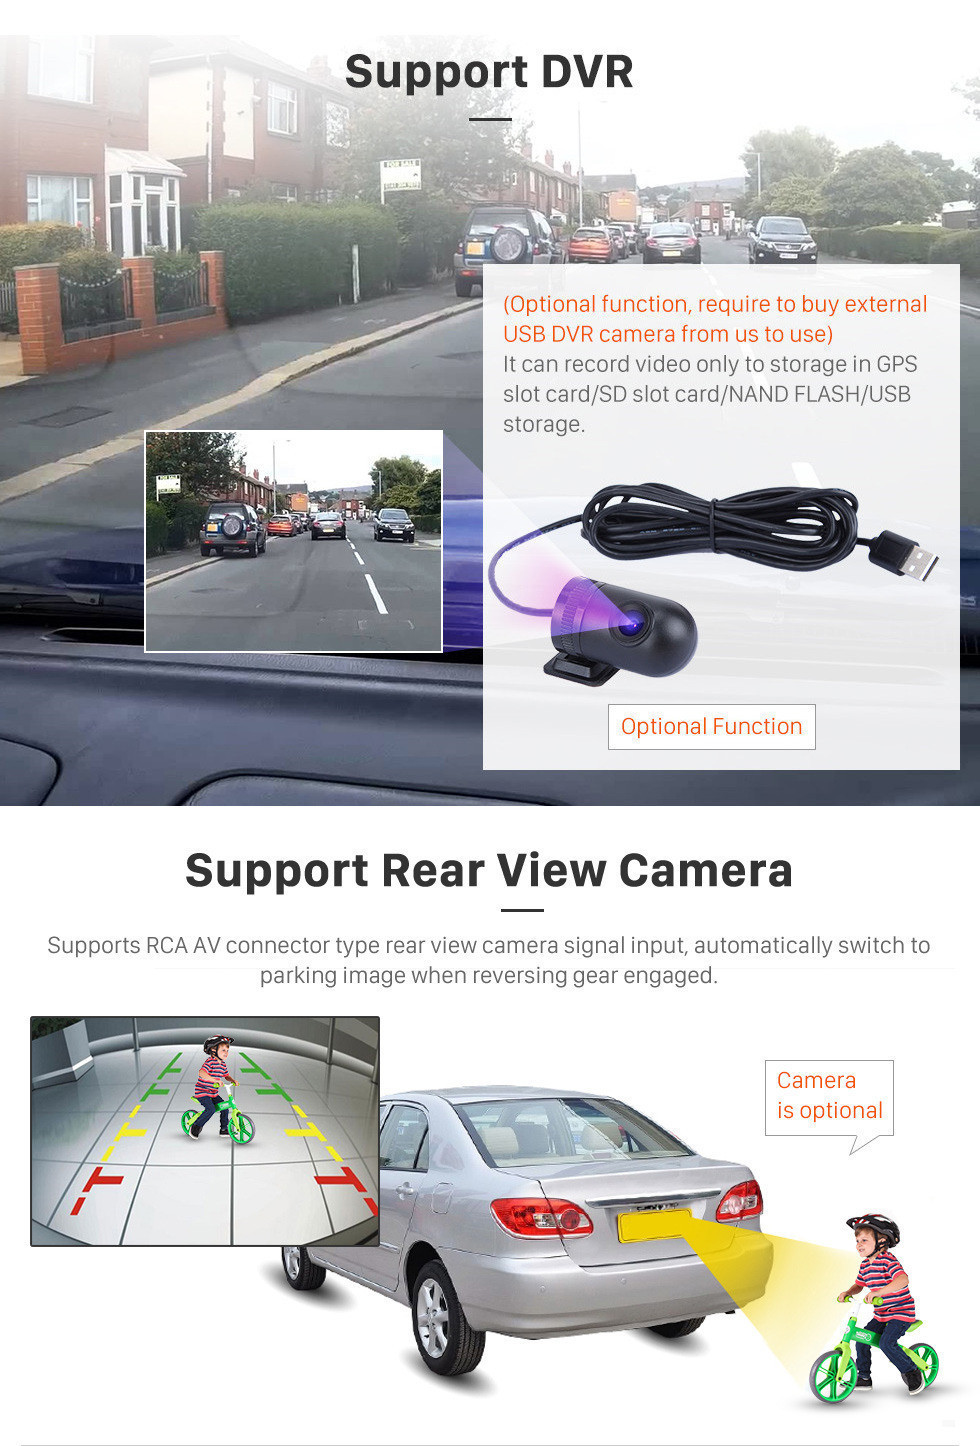 Seicane 2007-2013 Honda Fit (LHD) Android 11.0 10.1-дюймовый GPS-навигатор с Bluetooth-радио OBD2 Резервная камера Цифровое ТВ Руль Управление Зеркало Ссылка